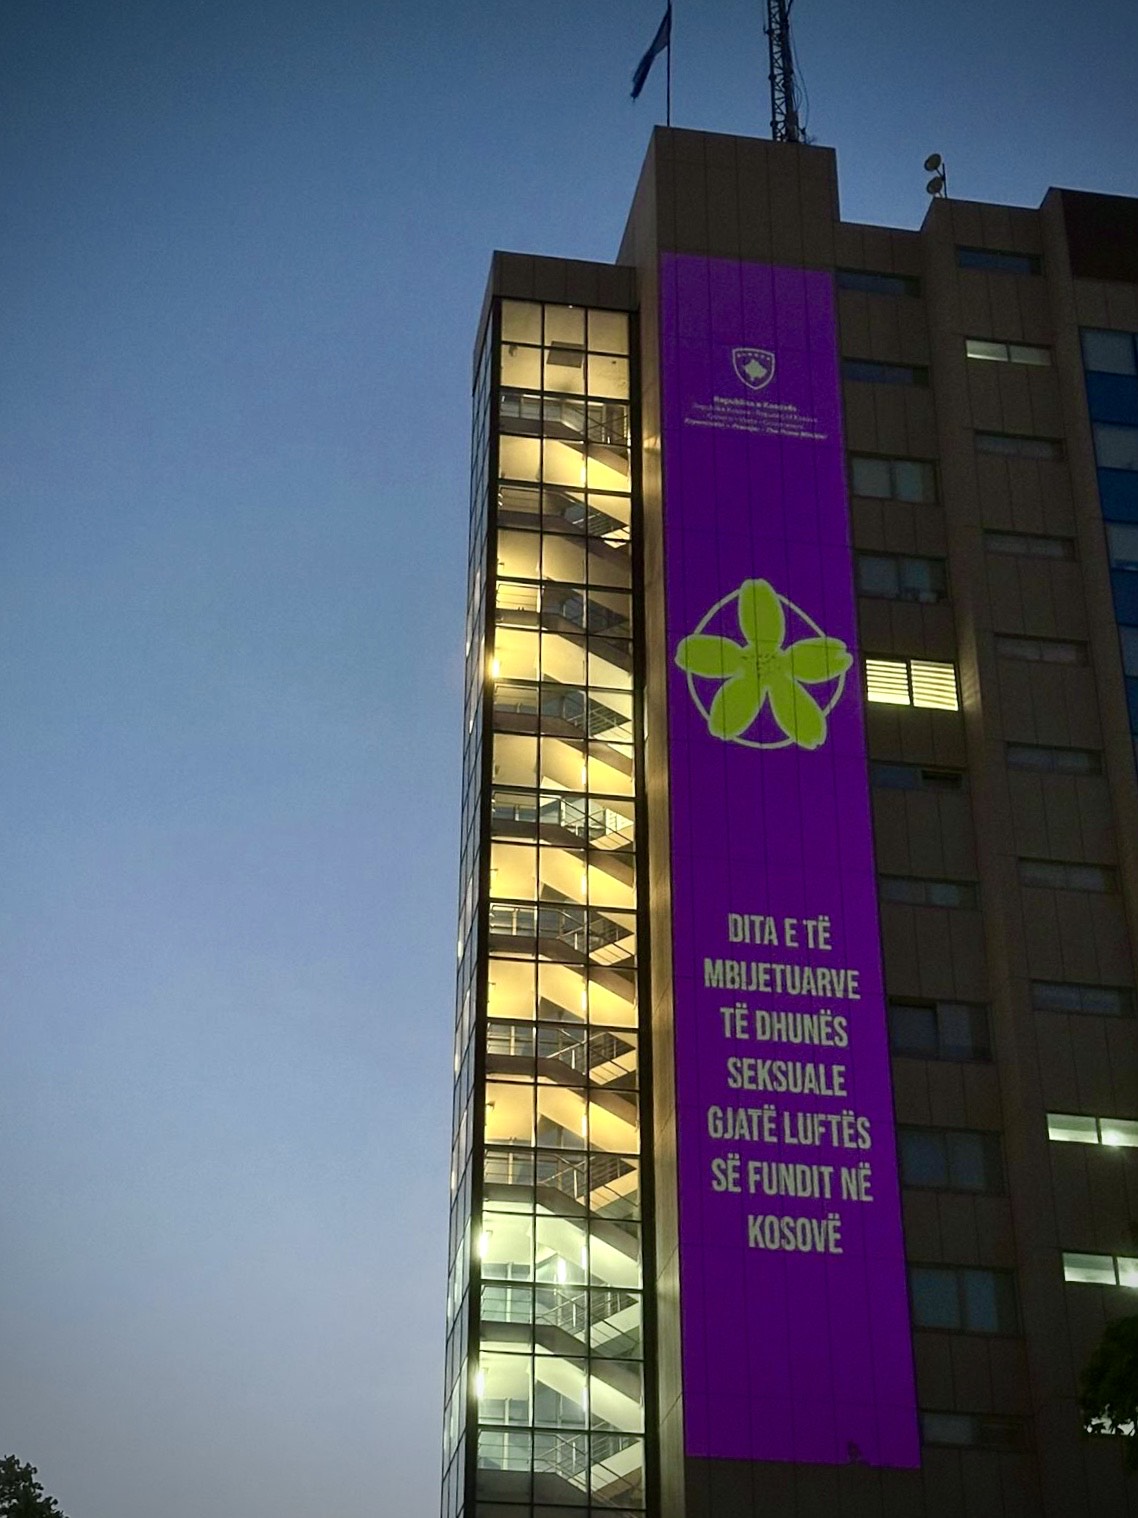 Ndërtesa e Qeverisë u ndriçua për Ditën e të mbijetuarve të dhunës seksuale gjatë luftës së fundit në Kosovë